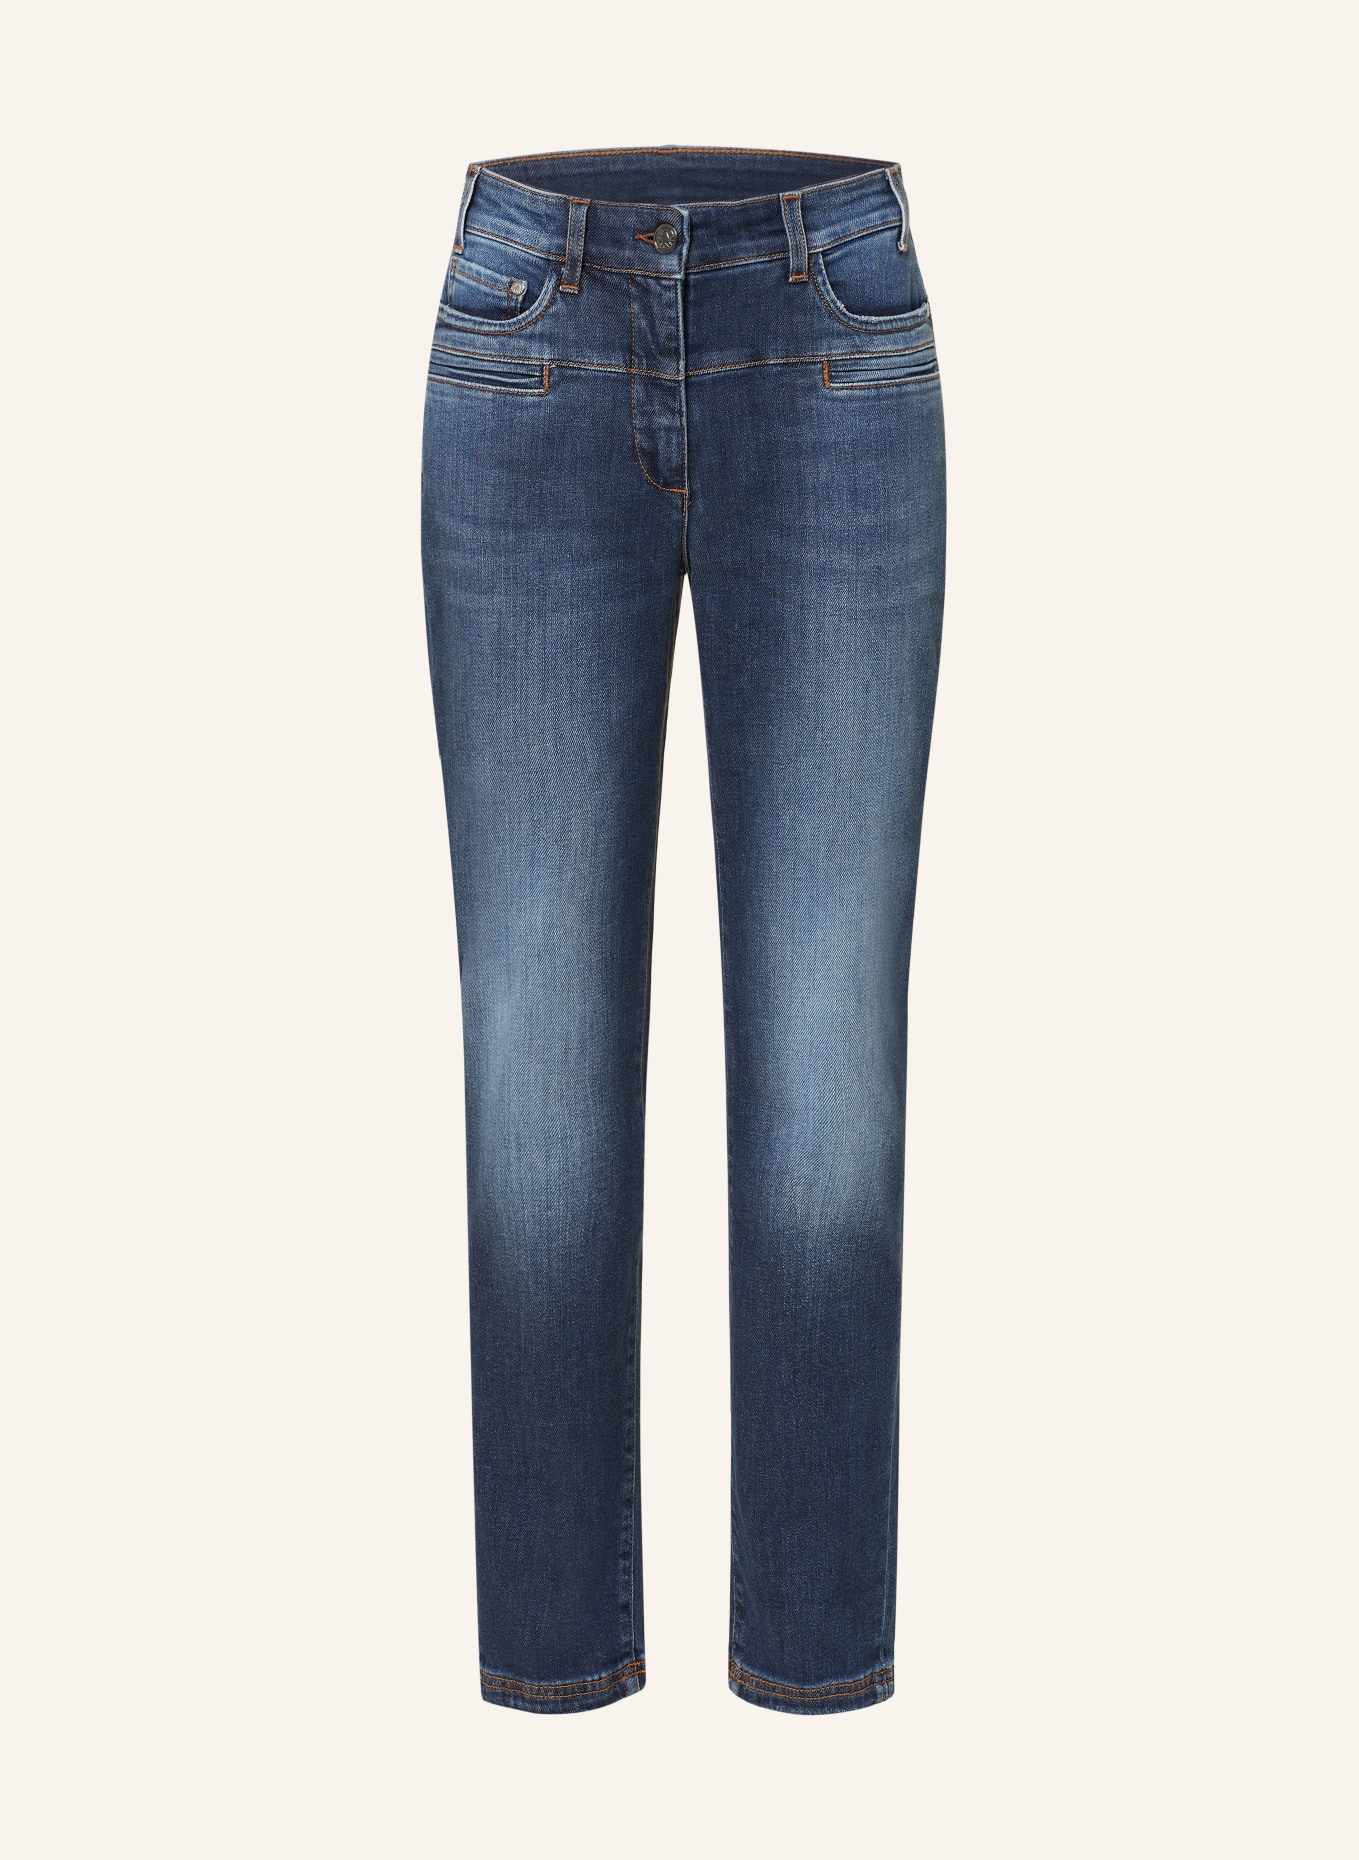 SPORTALM Straight Jeans, Farbe: 21 Blue Haven (Bild 1)